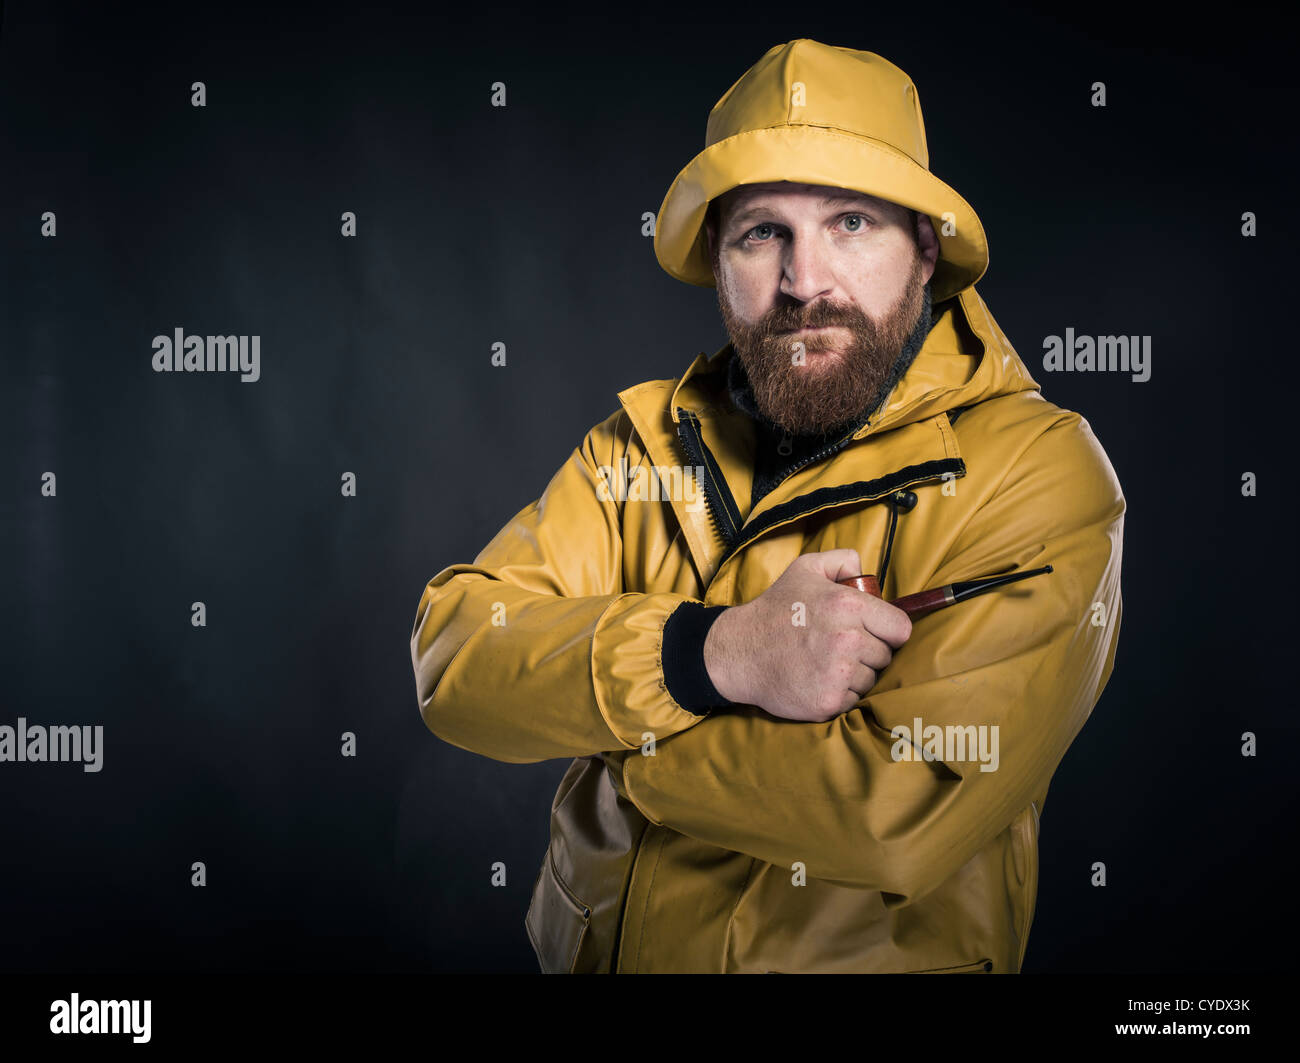 Fisherman wearing yellow Banque de photographies et d'images à haute  résolution - Alamy